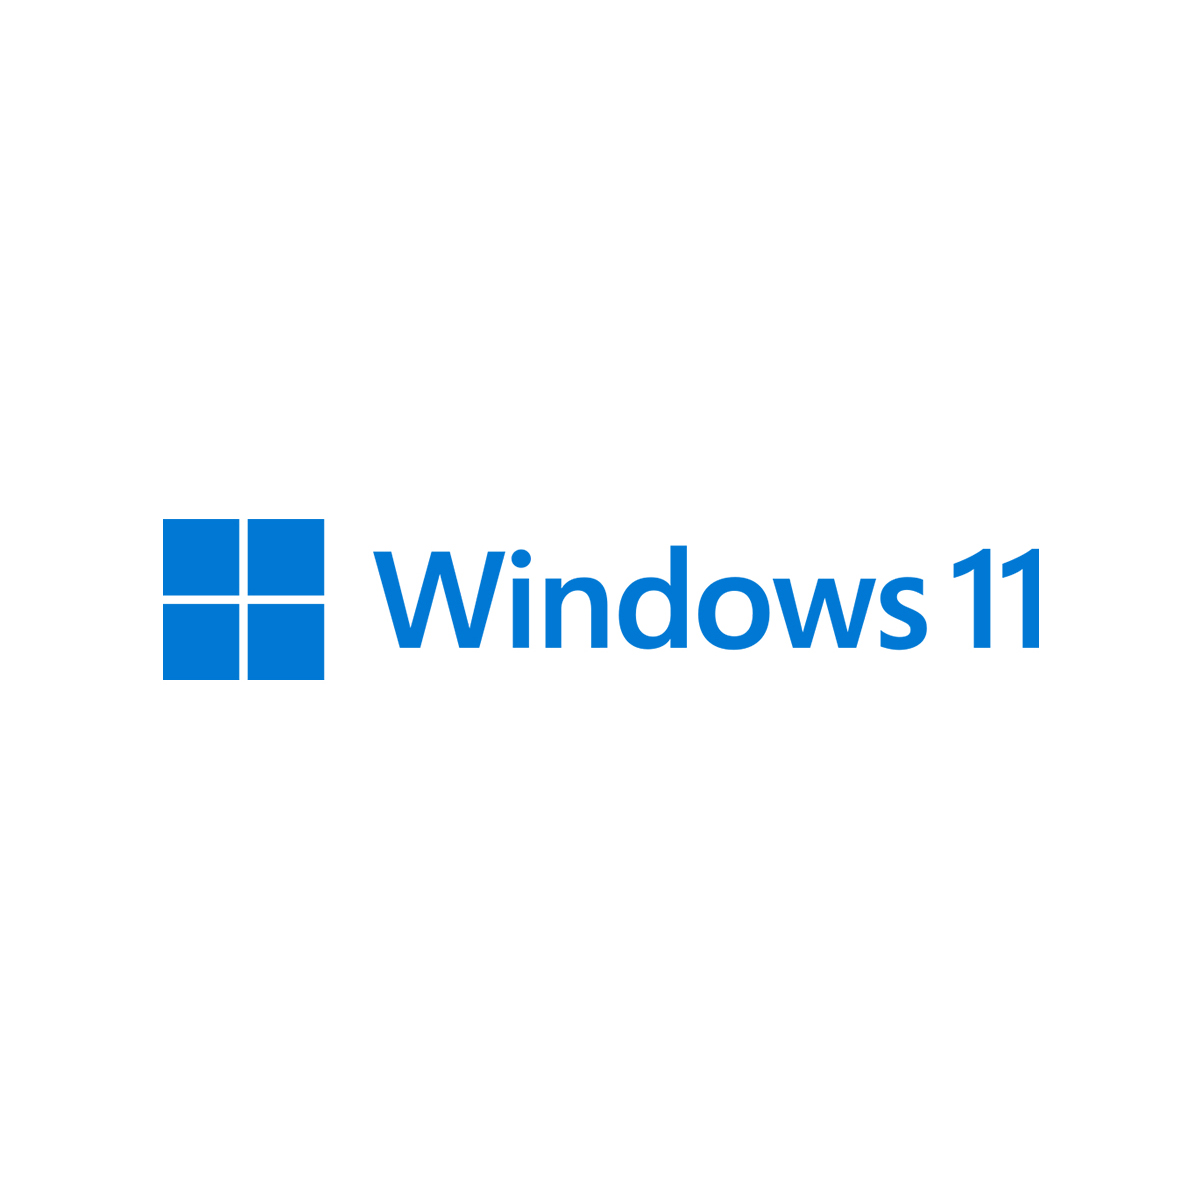 【更新】Windows11 バージョン 23H2の動作検証についてのお知らせ